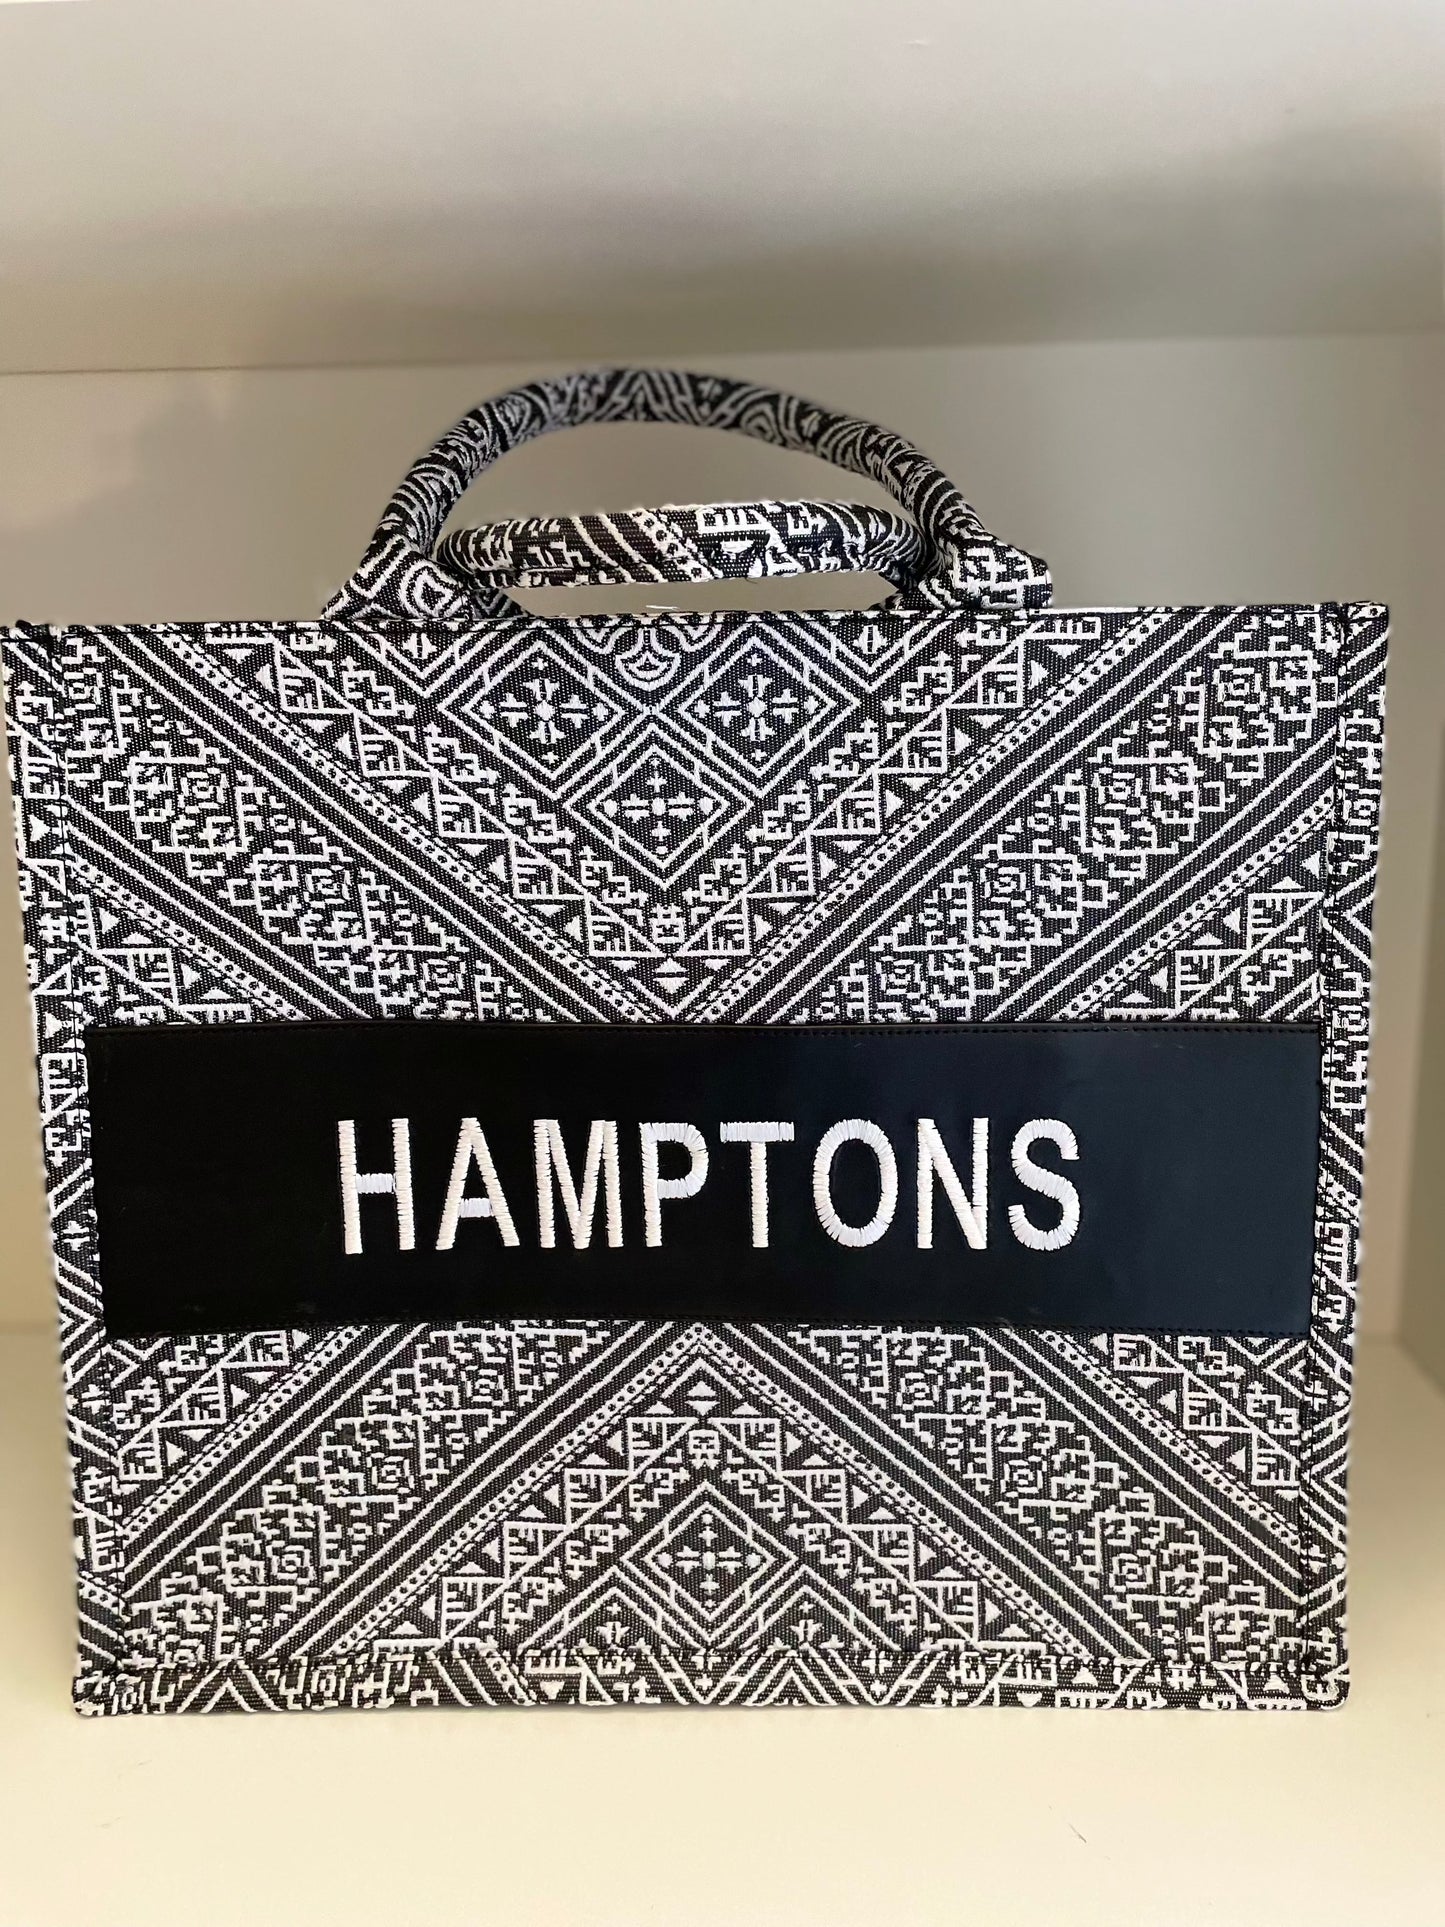 Large Tote CD Hamptons - Premium Bag from Marina St. Barth - Just $100! Shop now at Marina St Barth